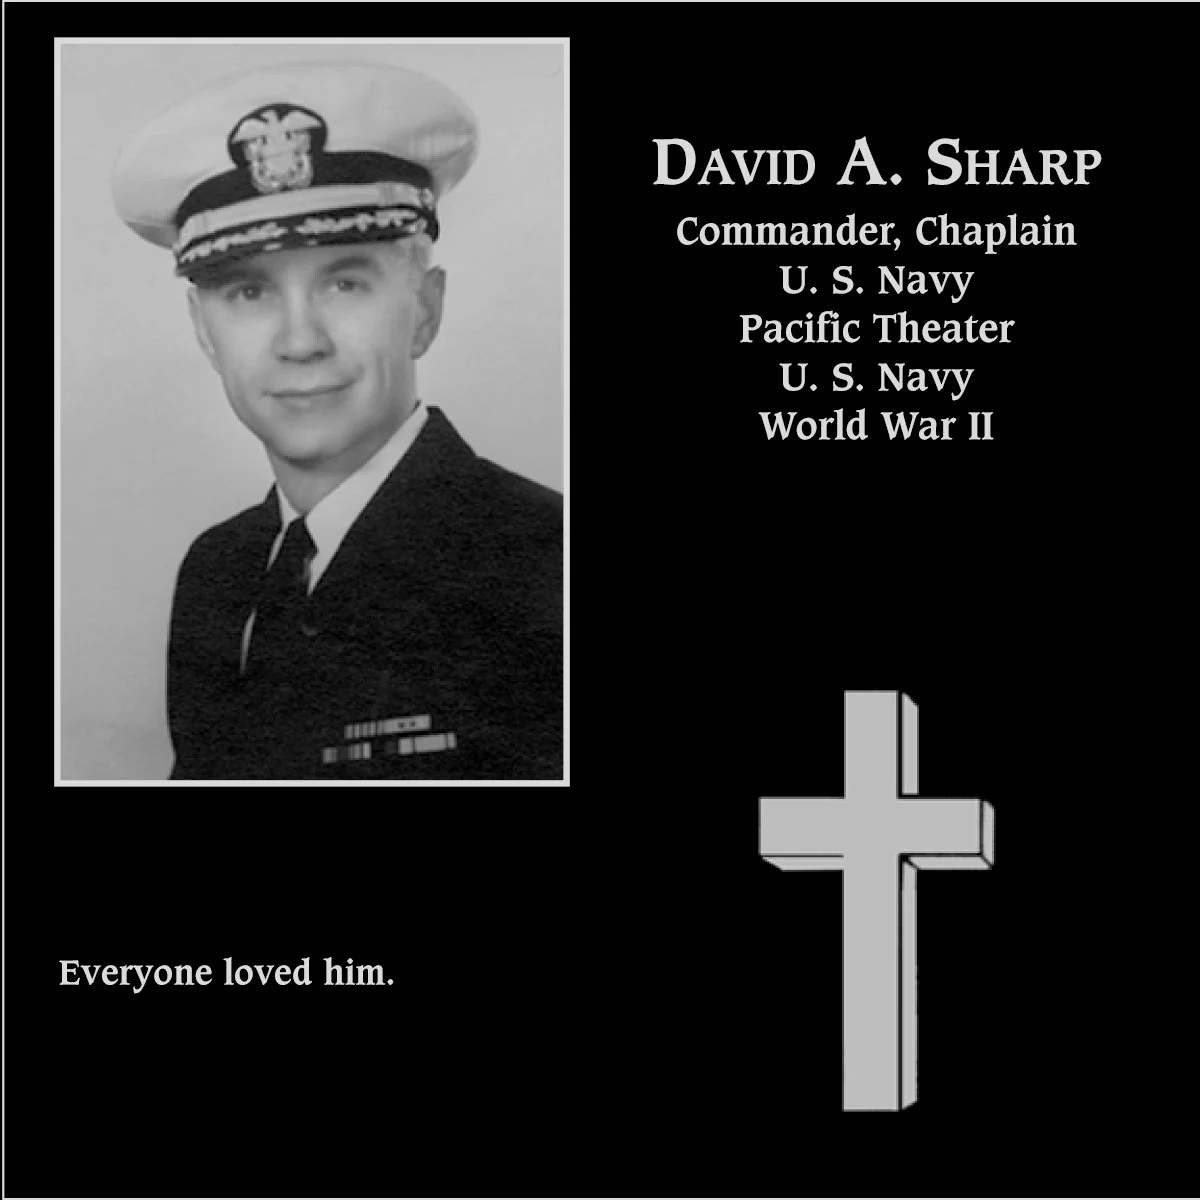 David A. Sharp